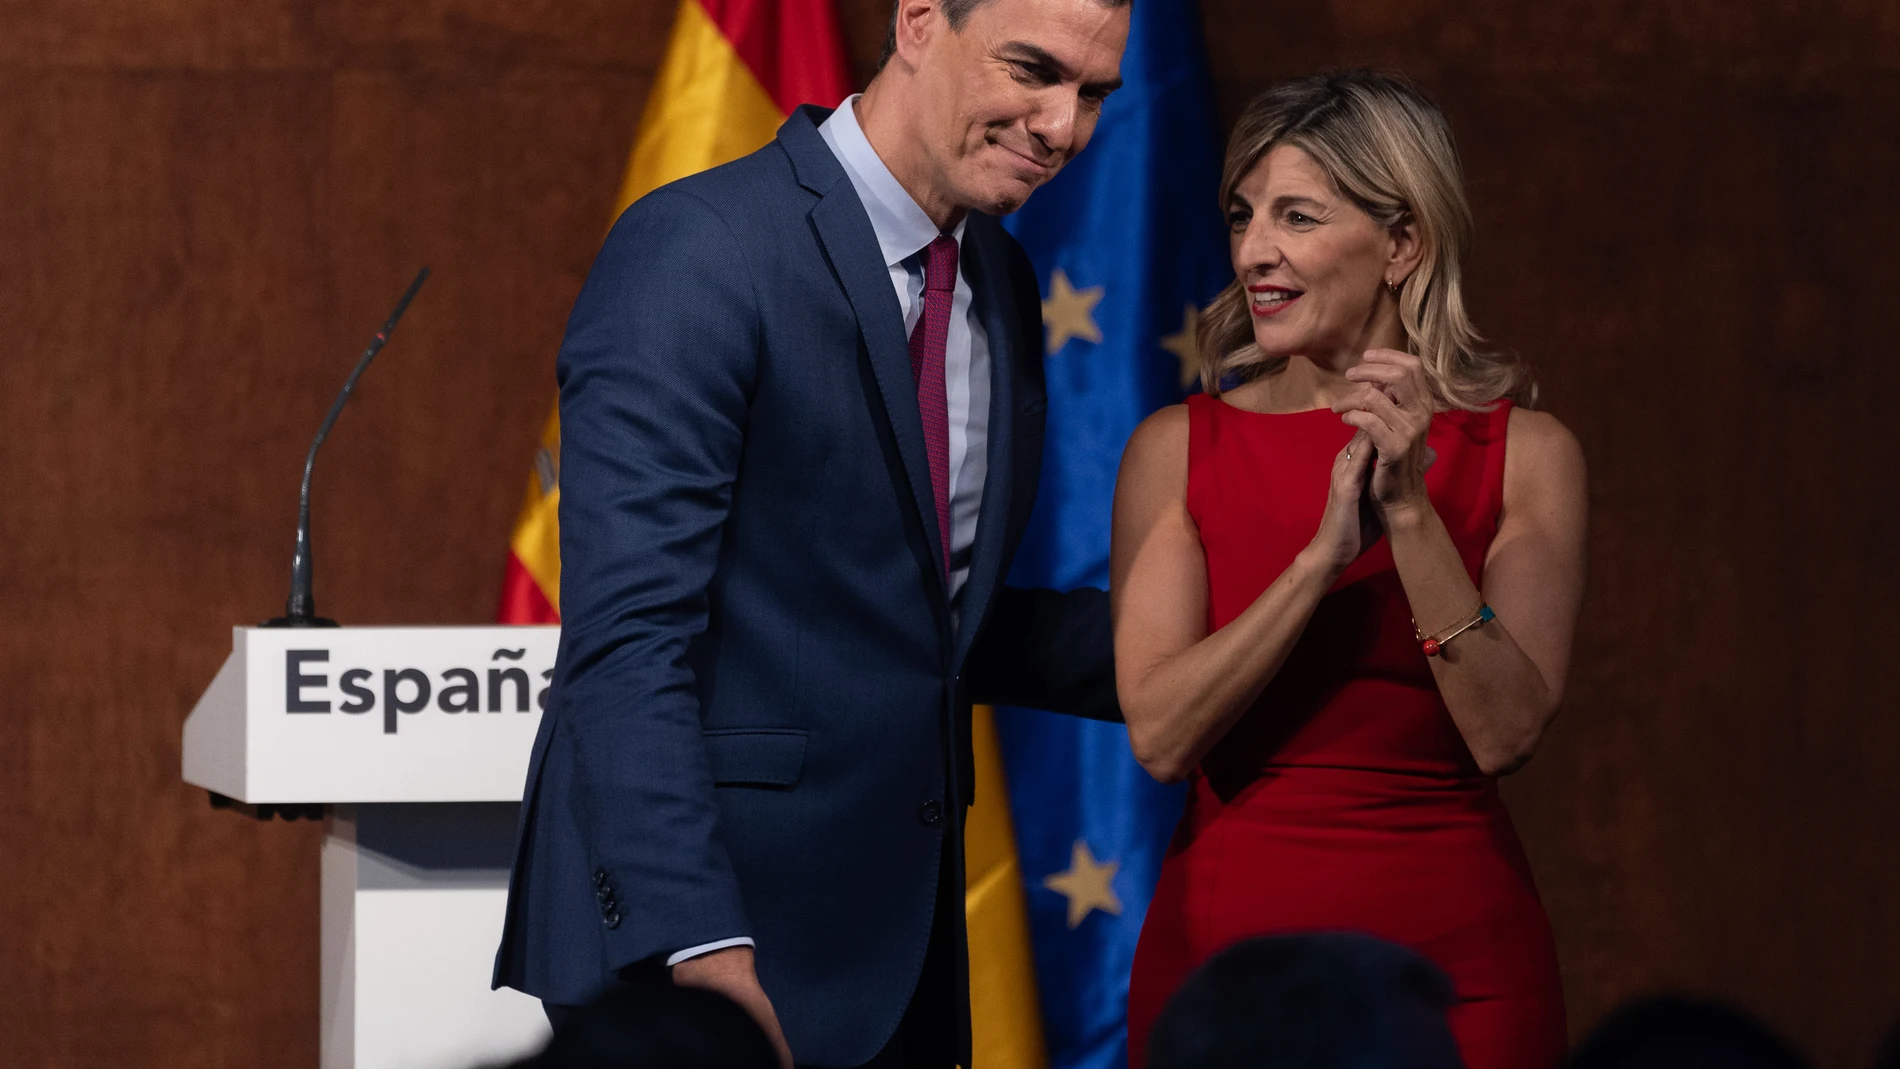 AMP.- Sánchez y Díaz dan por hecho que habrá Gobierno y completará la legislatura: "Vamos a estar cuatro años más"